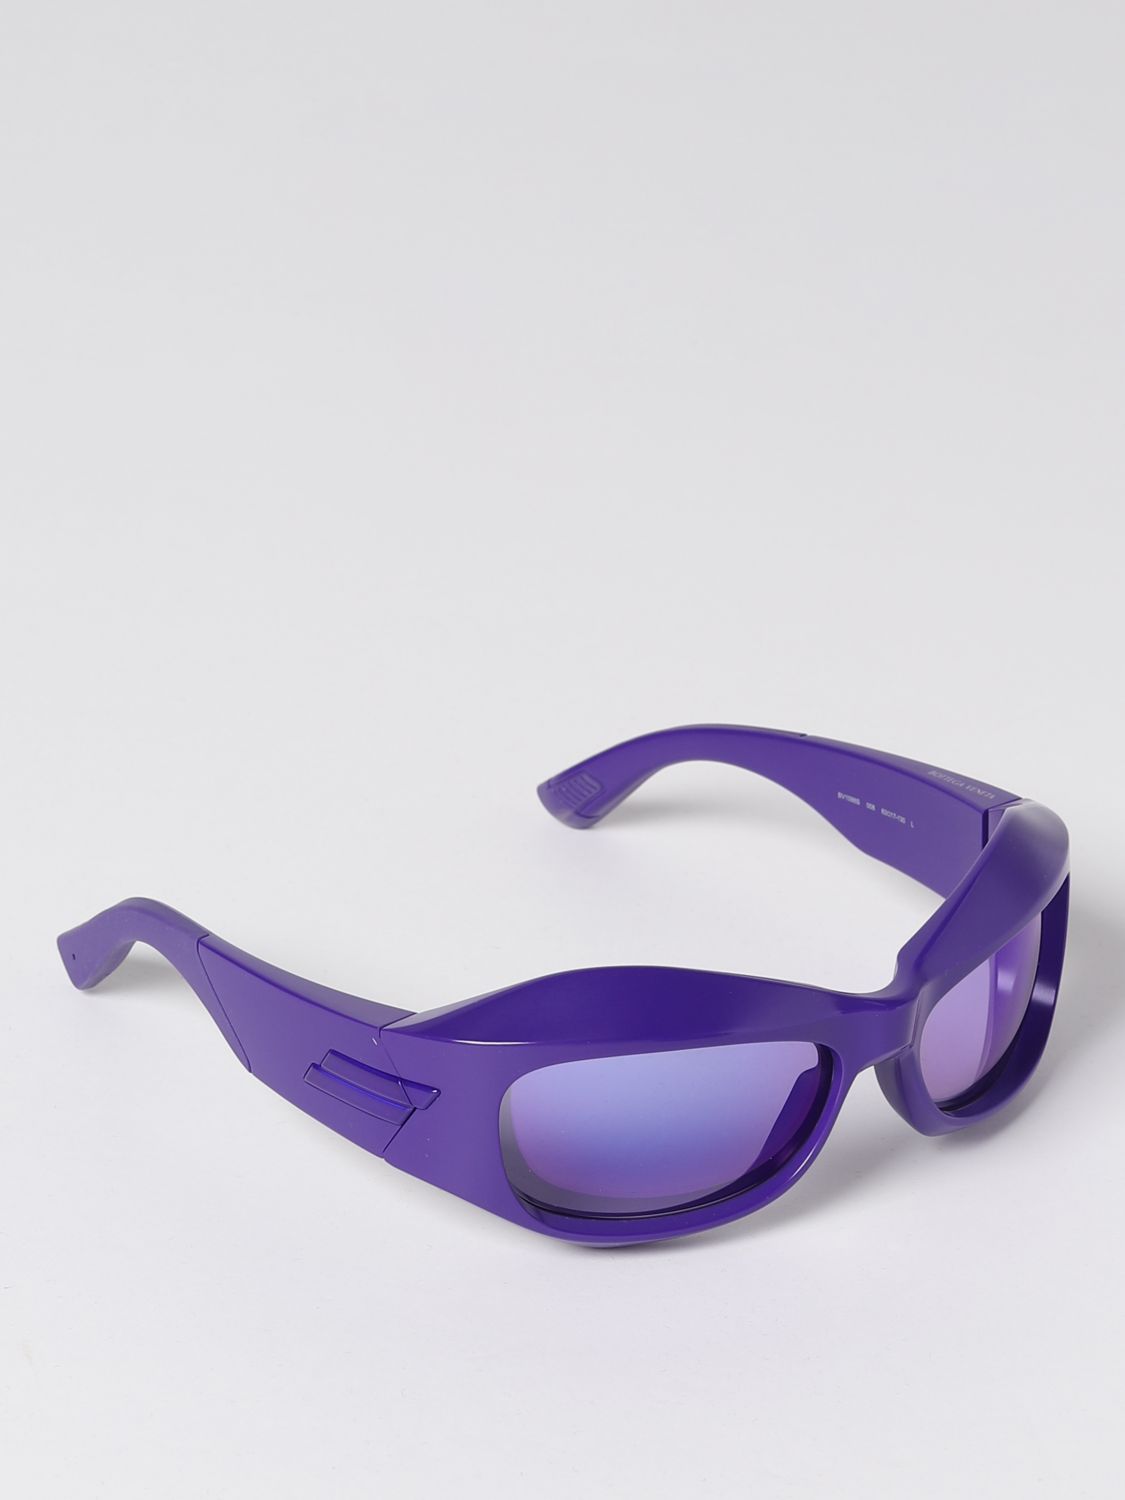 Bottega Veneta BV1086S 1086 Sunglasses Violet 008 Authentic 63mm